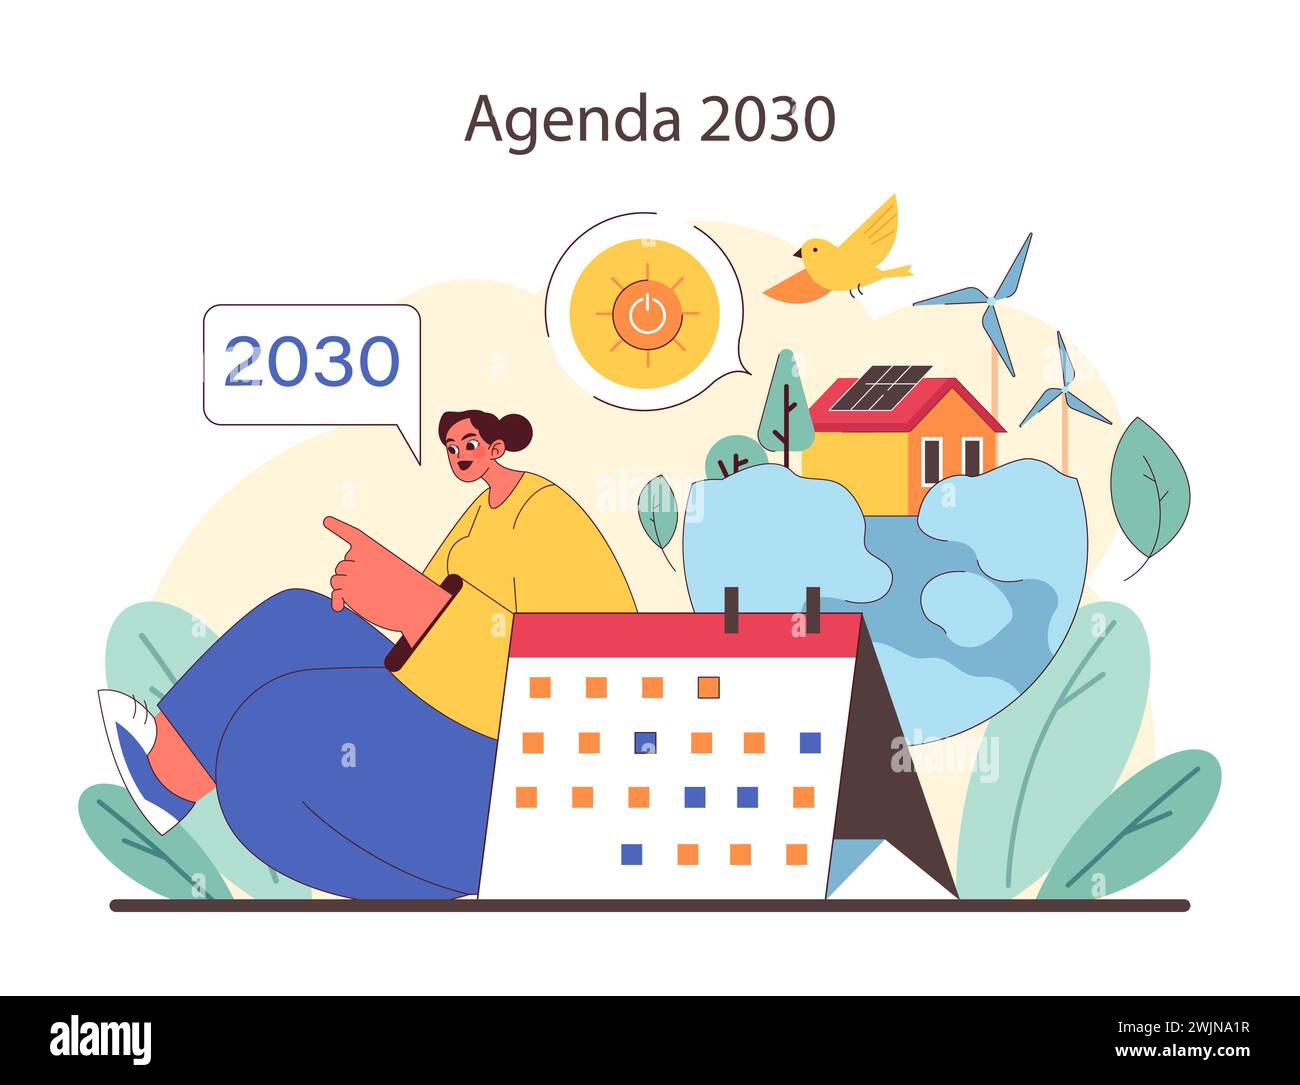 Futuristische Vision für 2030. Förderung erneuerbarer Energien und nachhaltiger Städte. Natürliche Lösungen für eine umweltfreundlichere Zukunft. Inspirieren Sie ein umweltfreundliches Stadtleben. Illustration des flachen Vektors. Stock Vektor